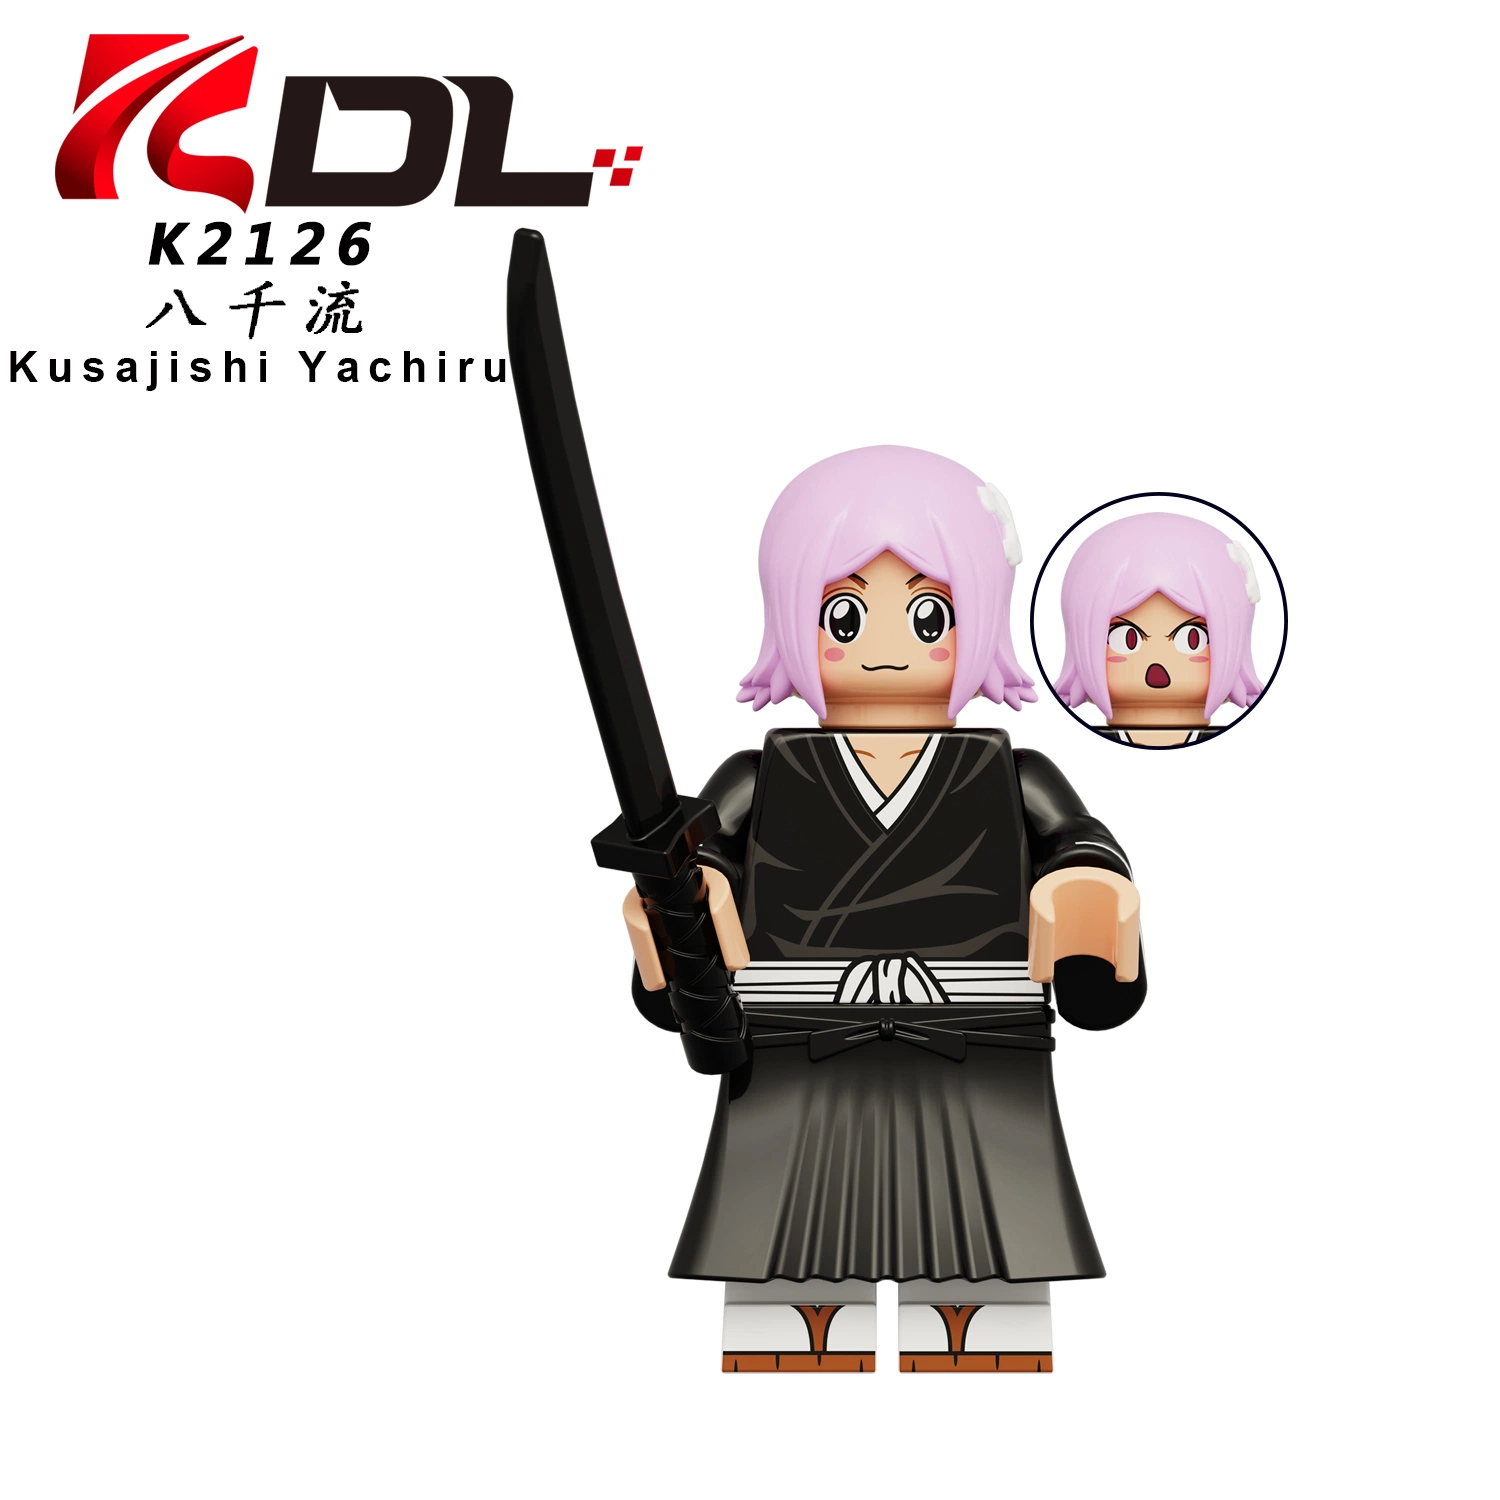 Blocos de construção anime Kdl816 Figuras de Ação de montagem Mini Kids brinquedos Presente de Natal